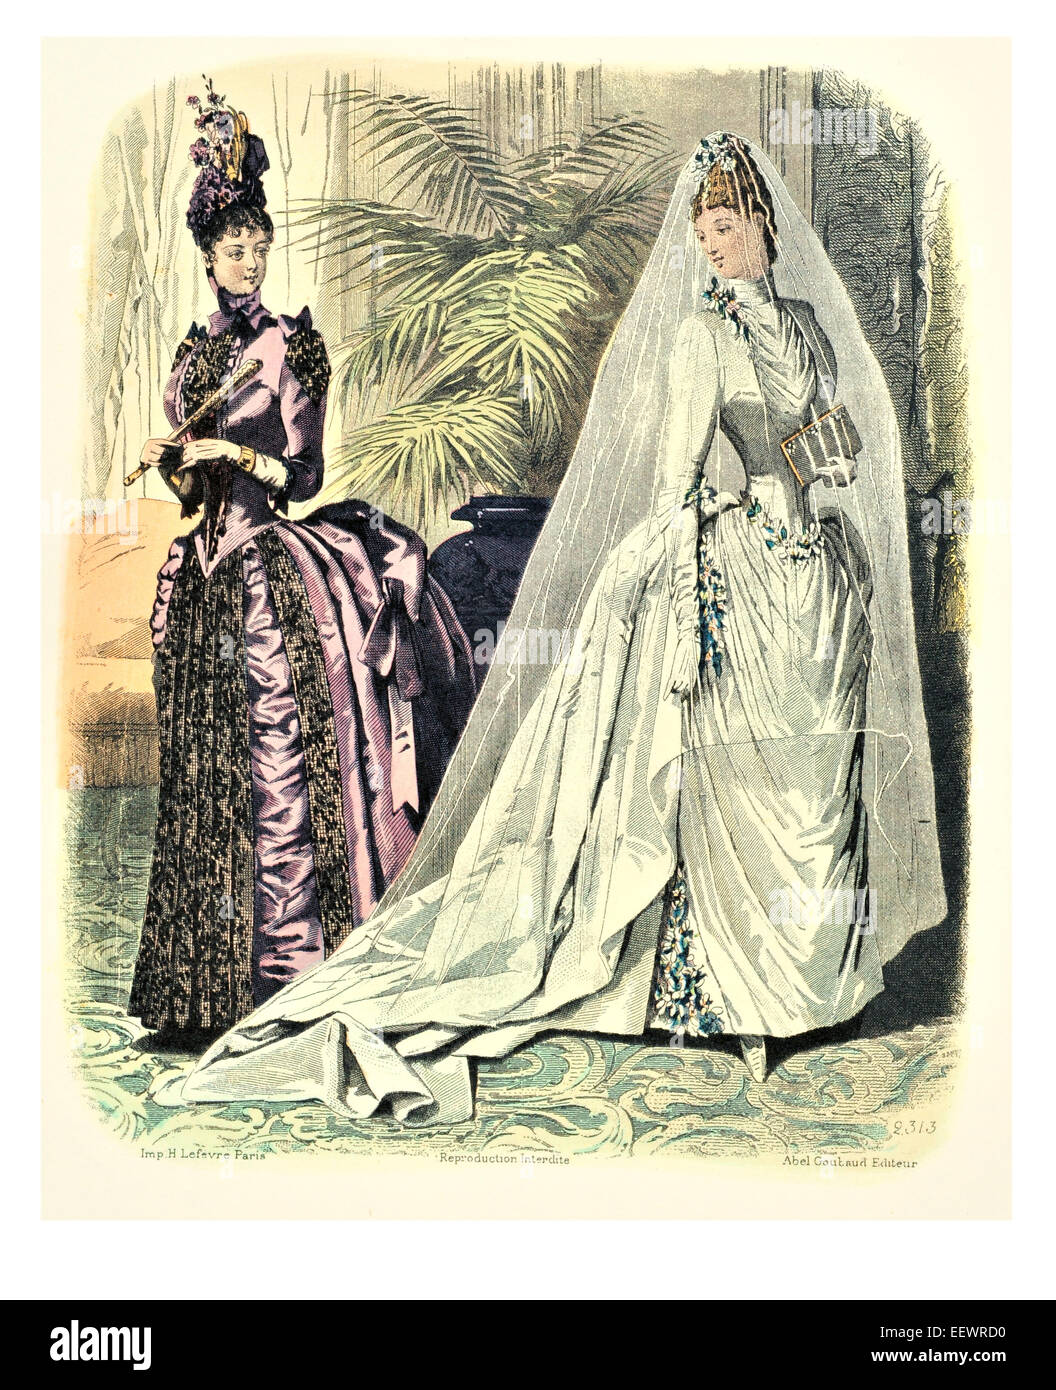 La Mode Illustree trajes de época victoriana moda vestido vestidos vestido falda velo cuff florituras muselina cap vestido de boda Foto de stock